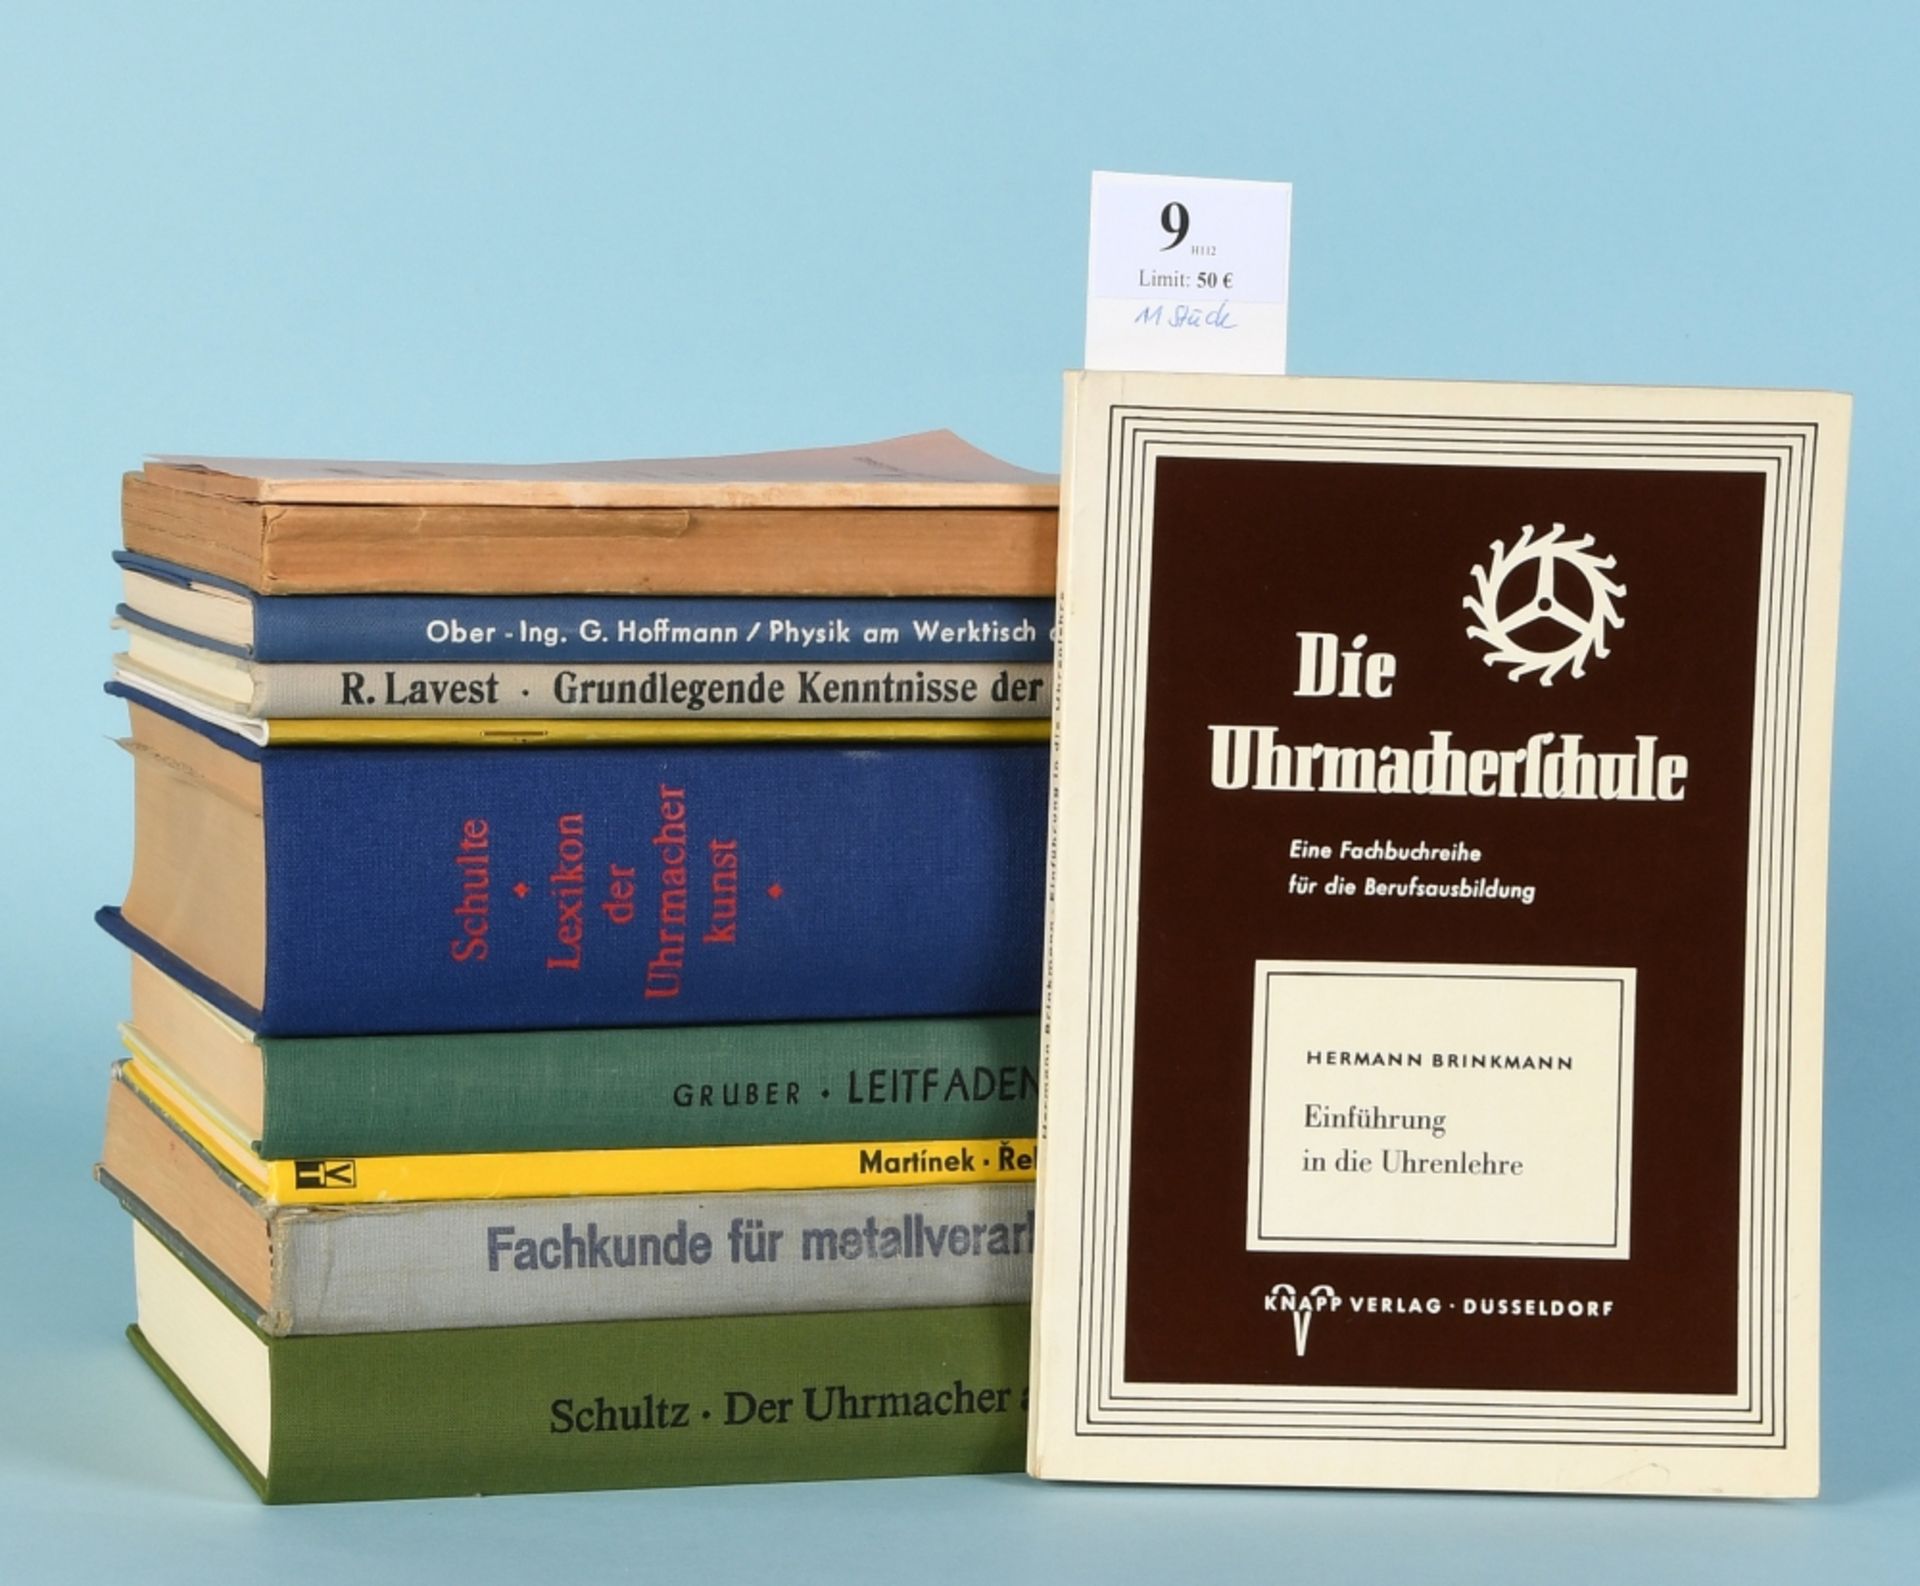 Bücher, 11 Stück "Fachliteratur für Uhrmacher"